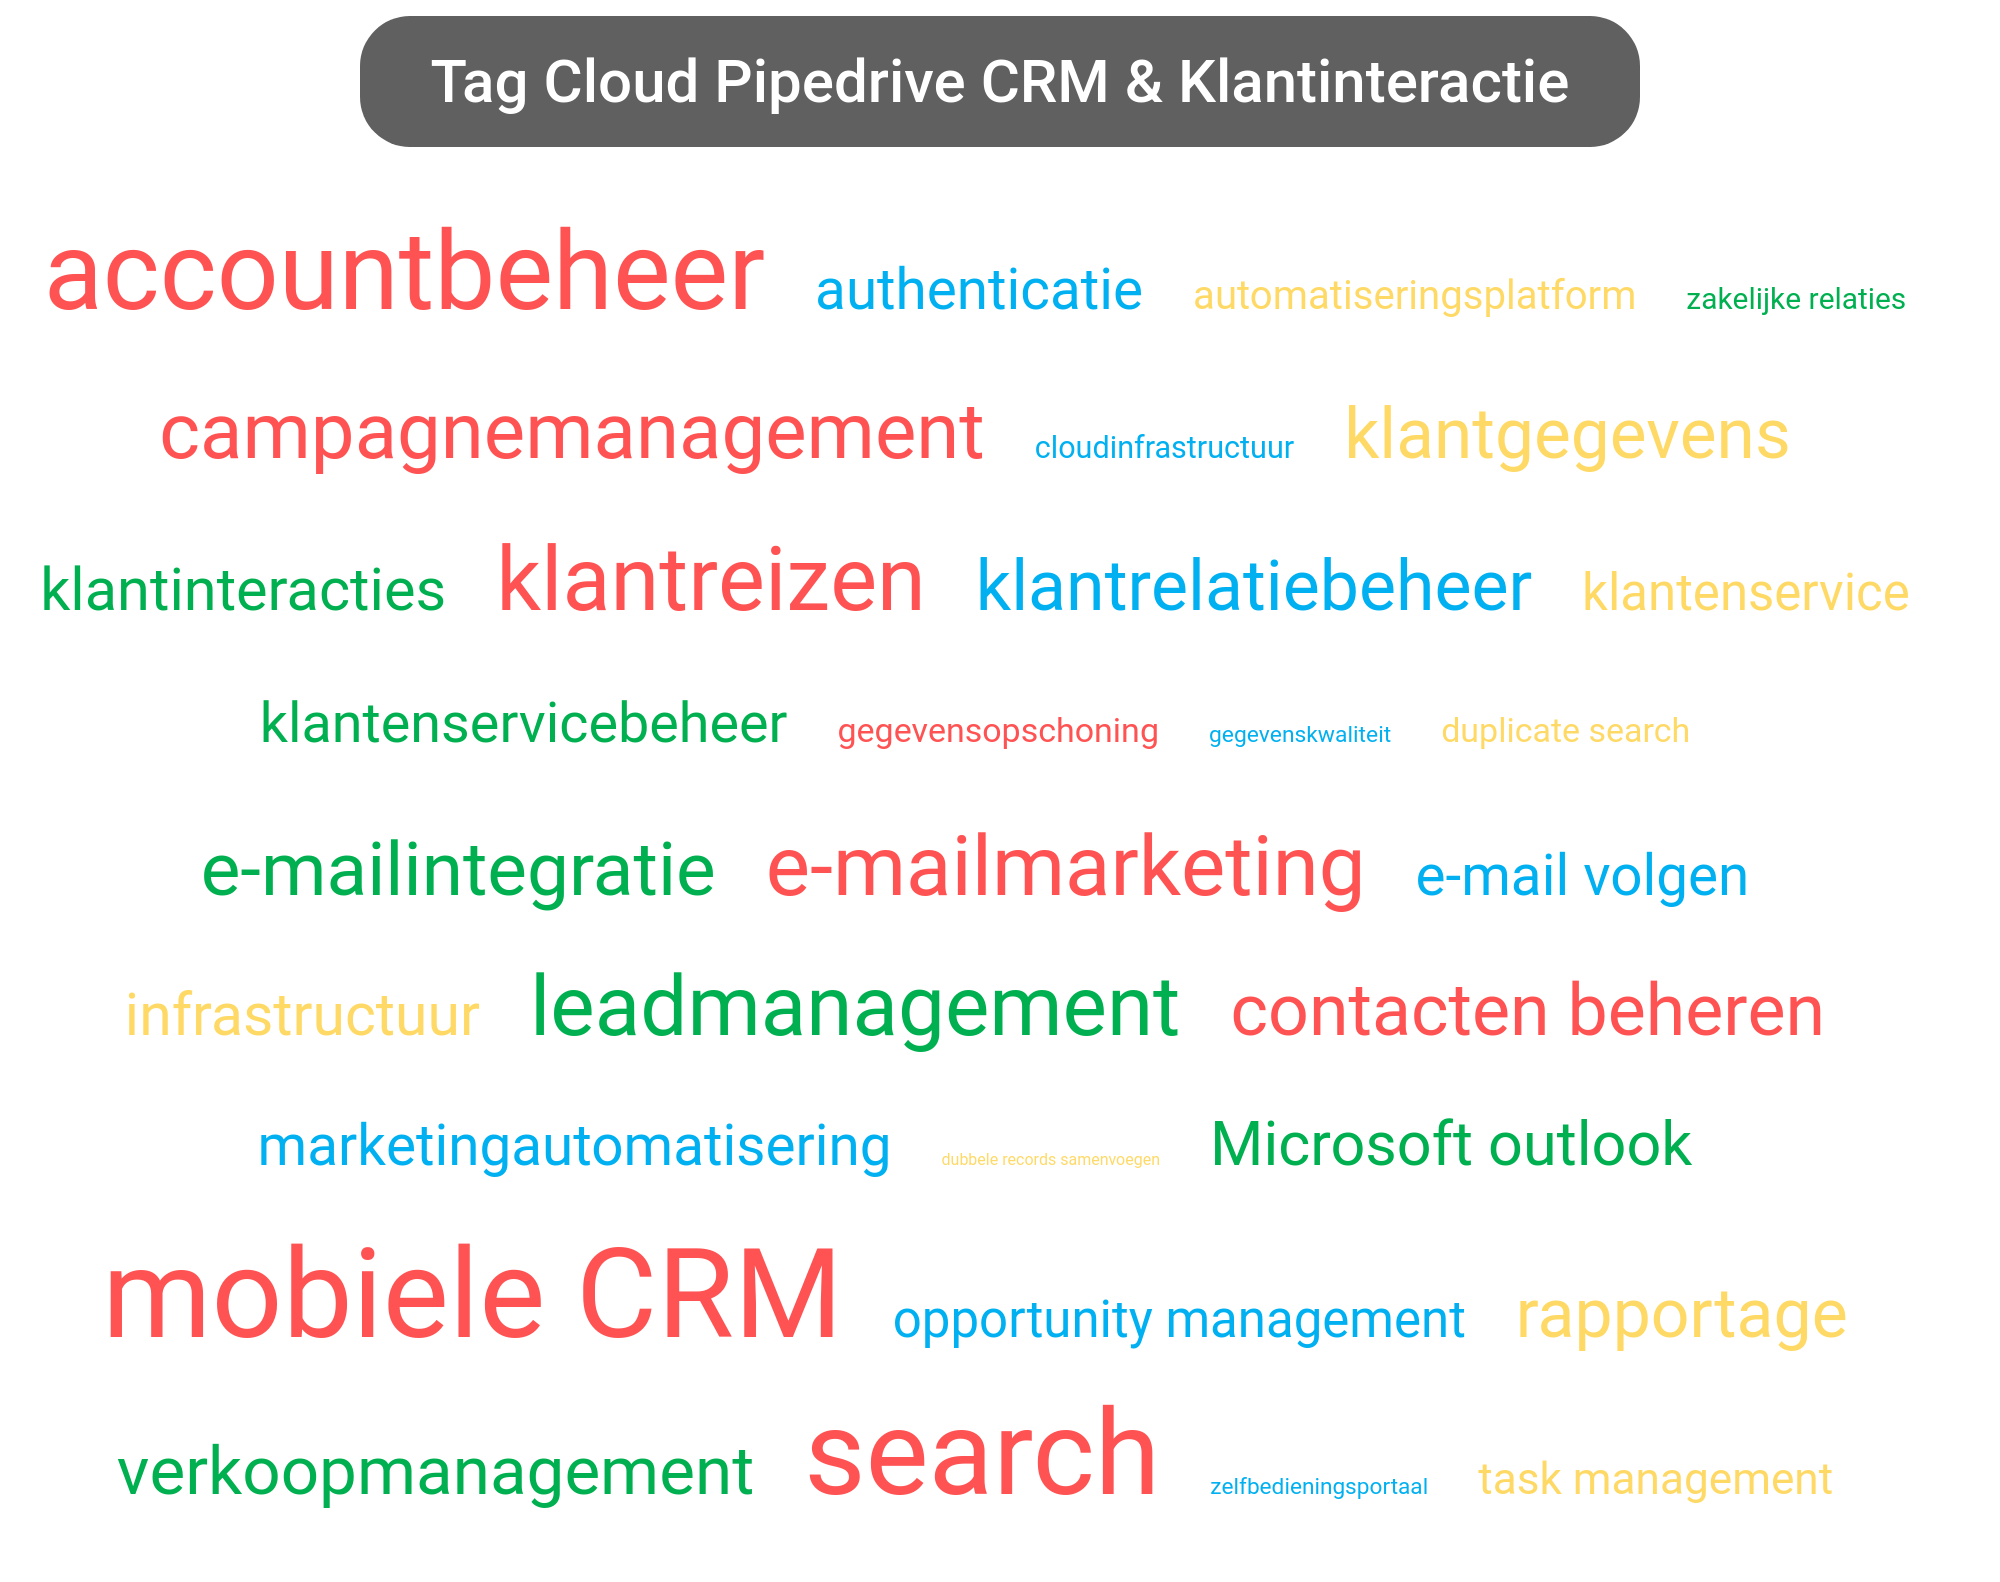 Tag cloud van Pipedrive CRM tools.